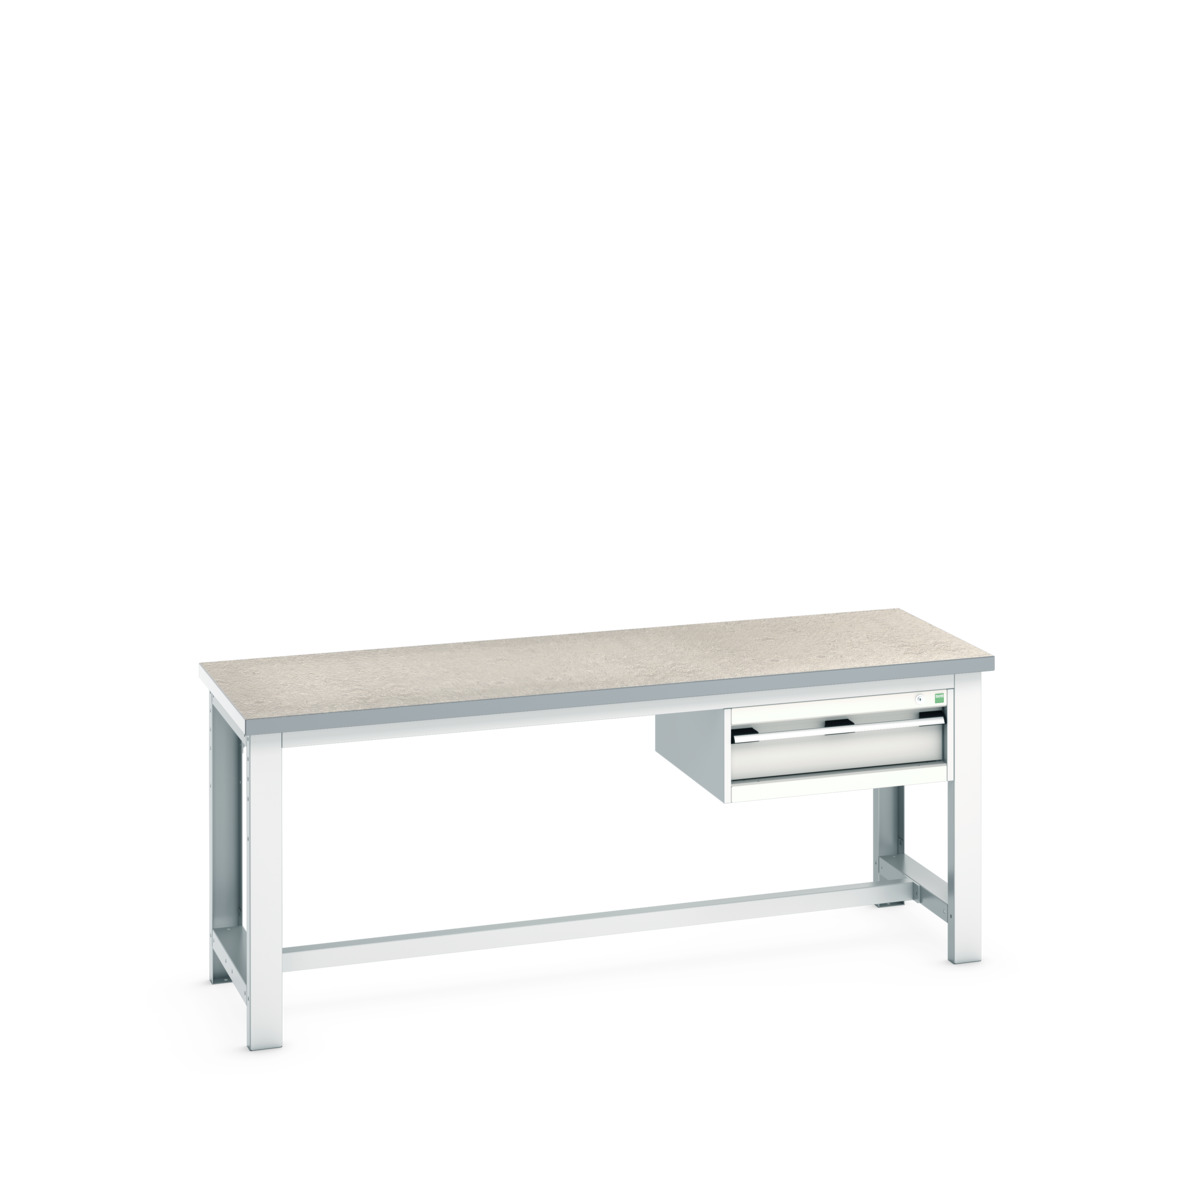 41003400.16V - cubio framework bench (lino)